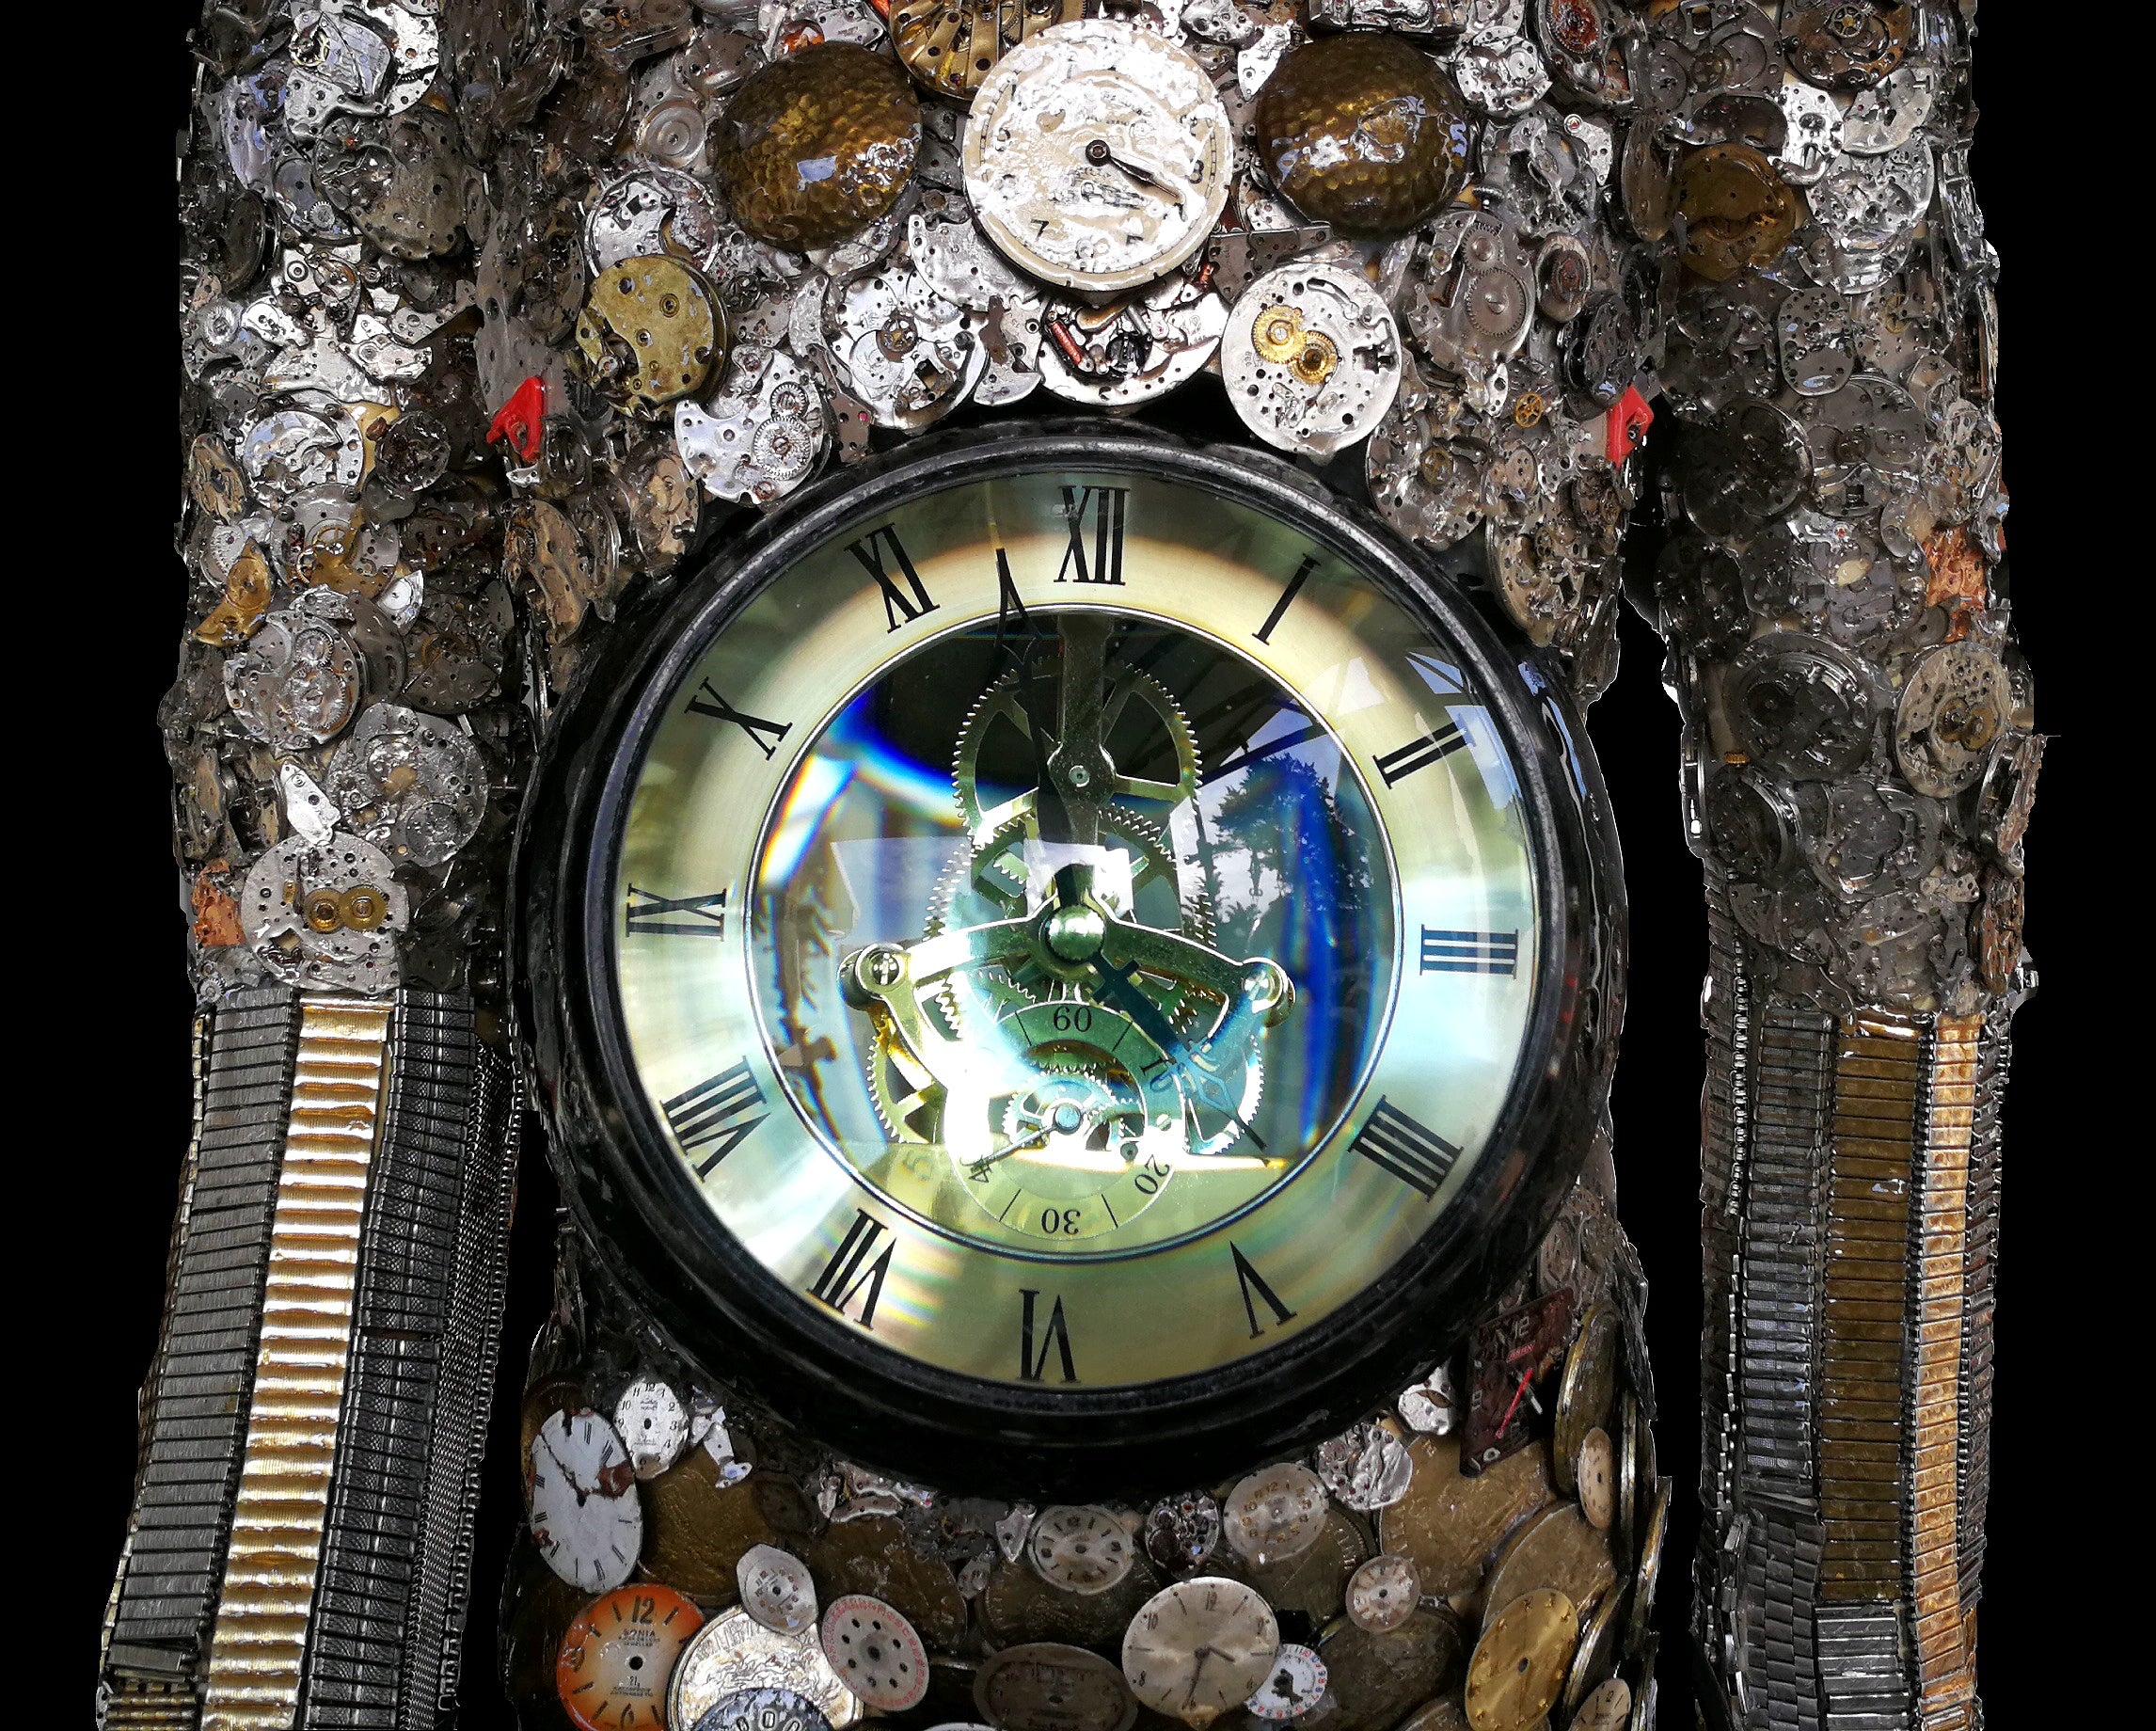 Die Tydbom close-up view of clock